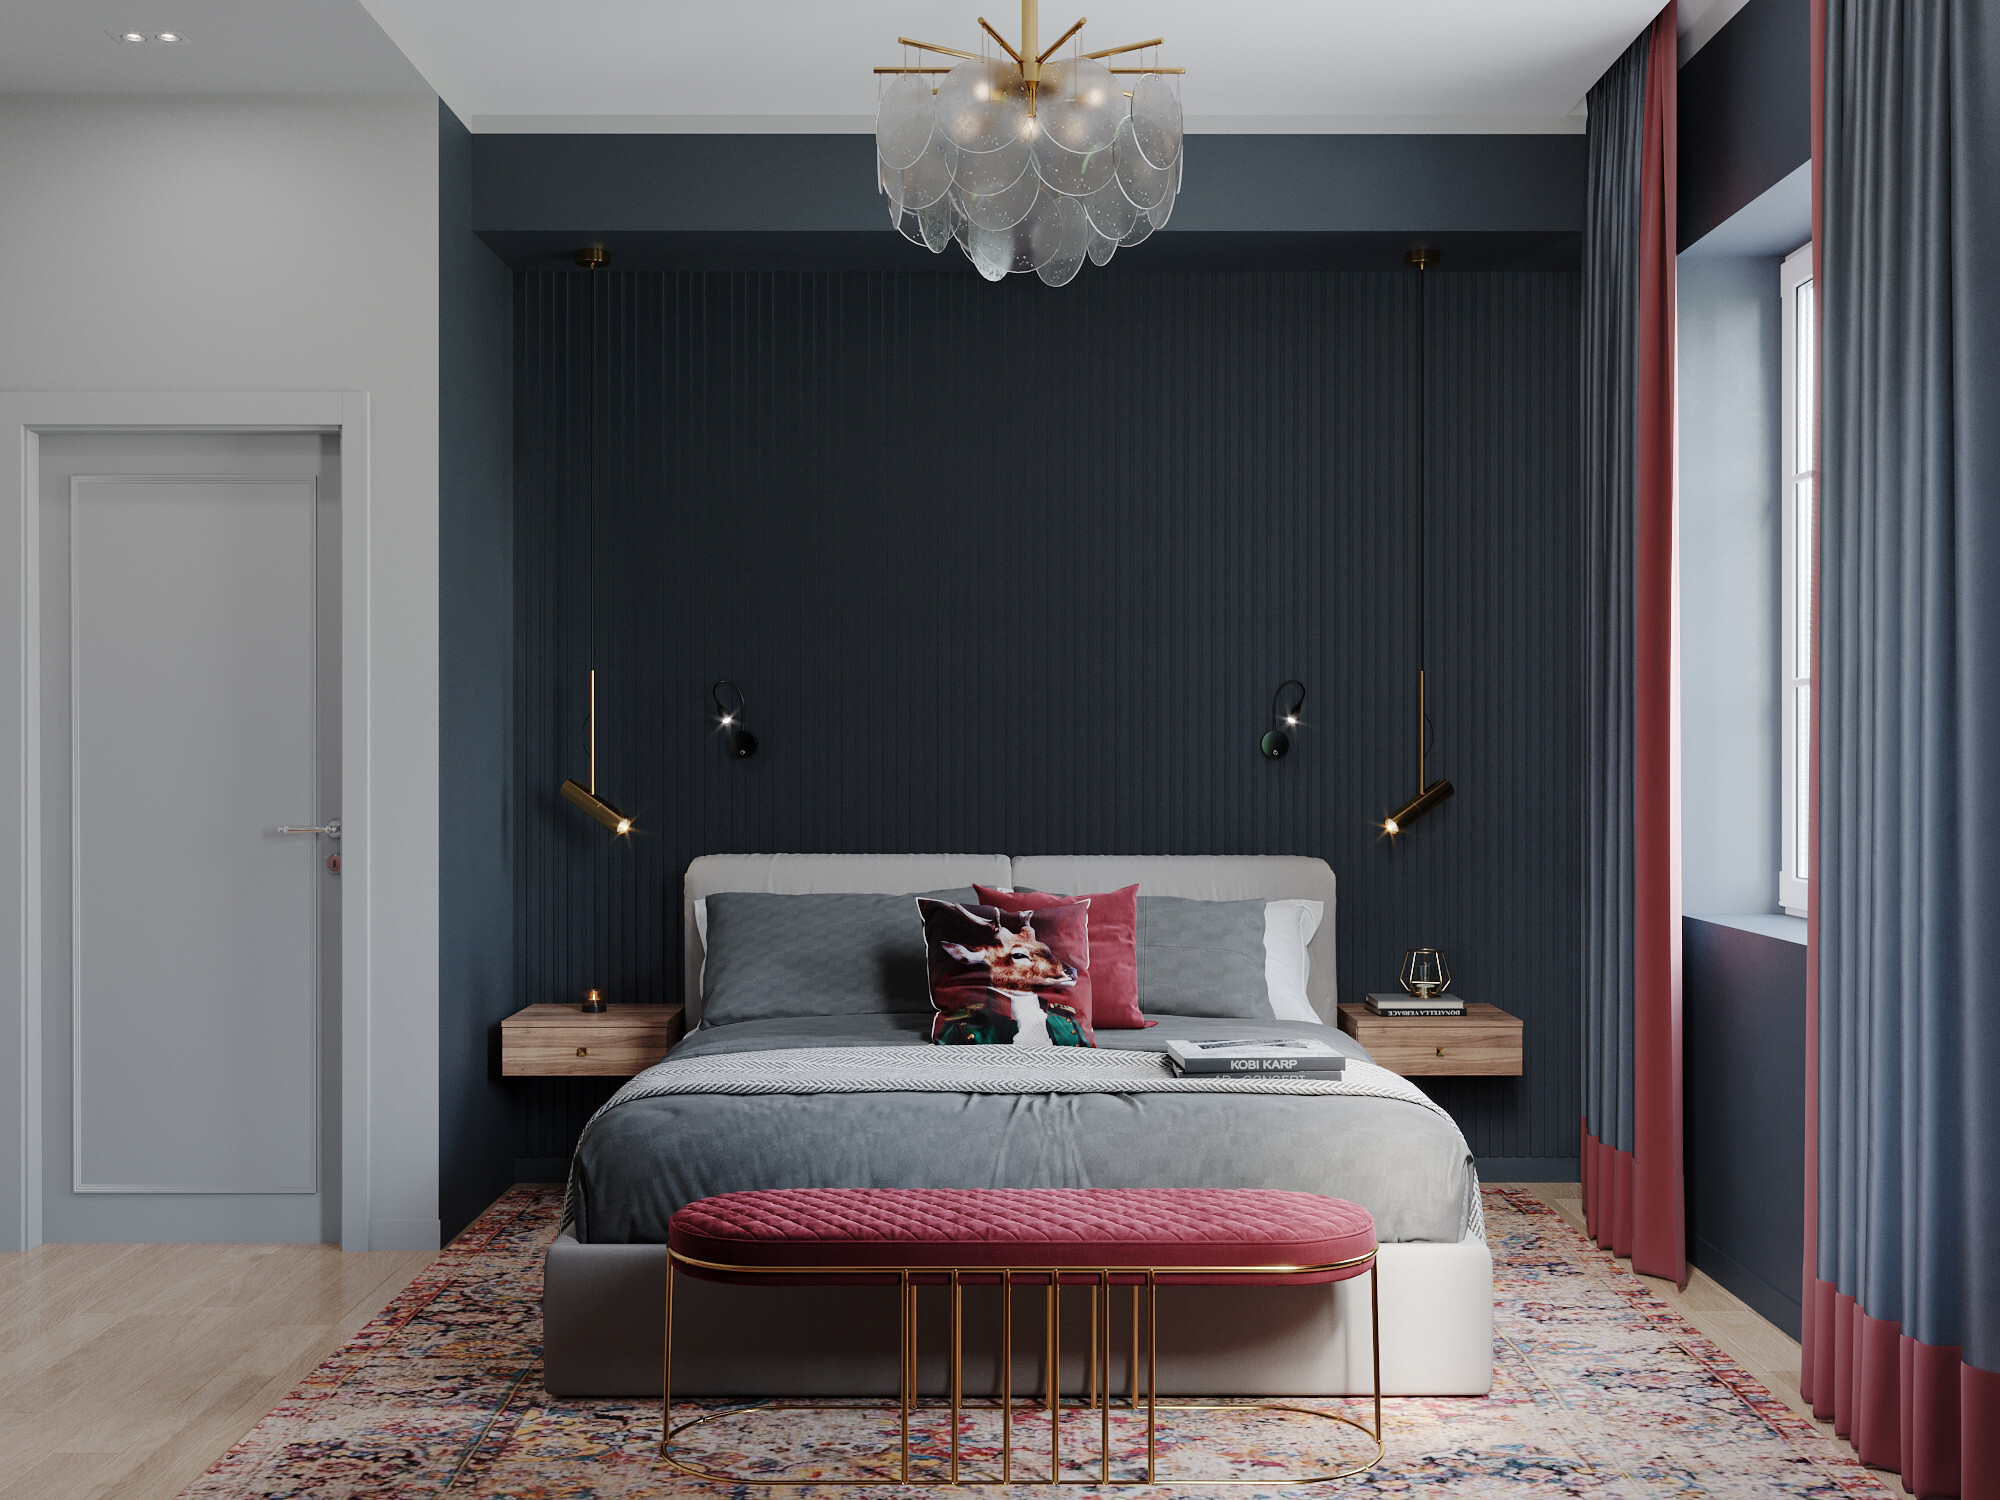 Интерьер спальни cветильниками над кроватью в стиле лофт и в стиле фьюжн